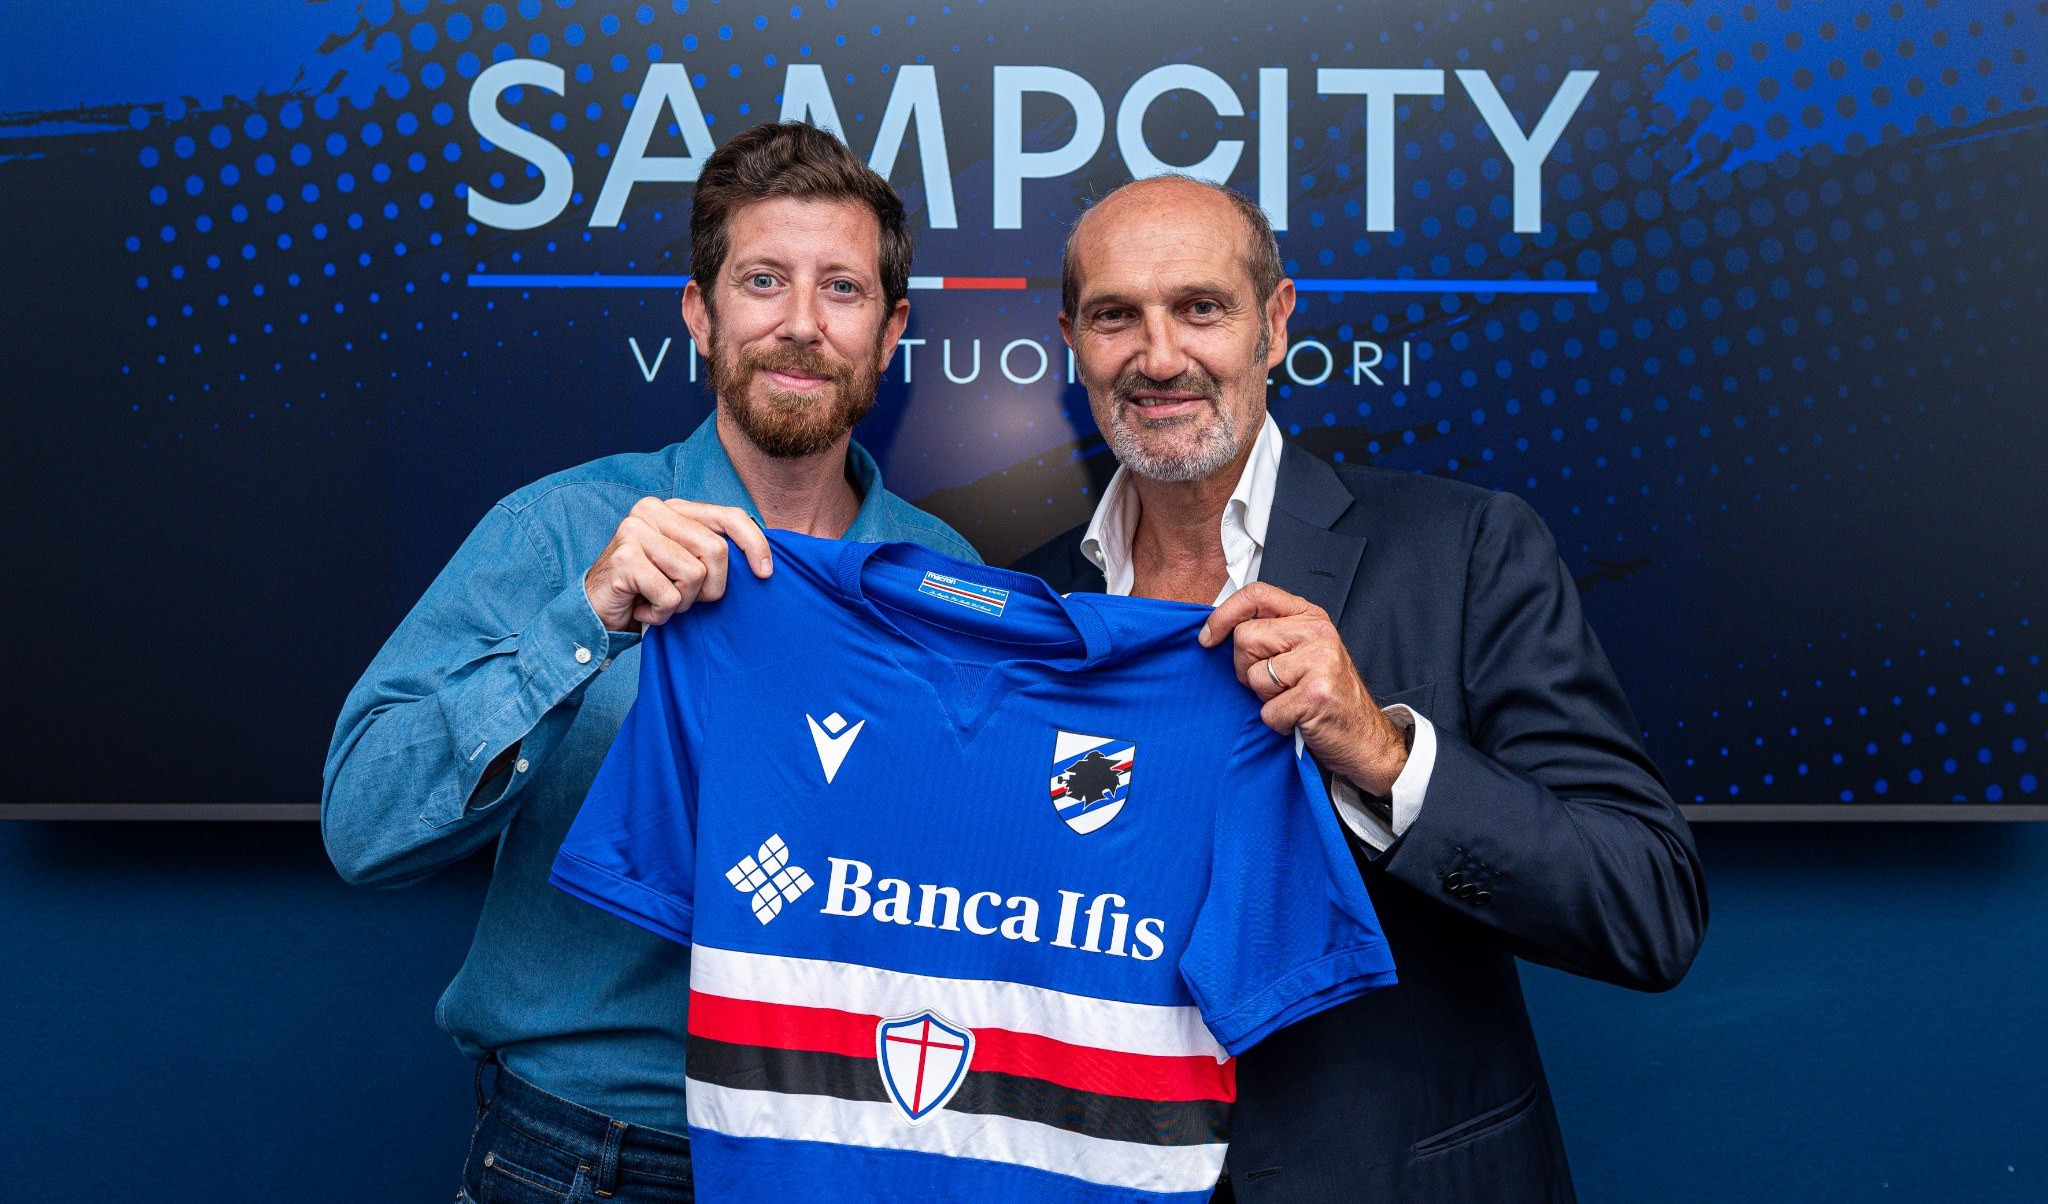 Sampdoria: nuove maglie e Banca Ifis resta sponsor principale